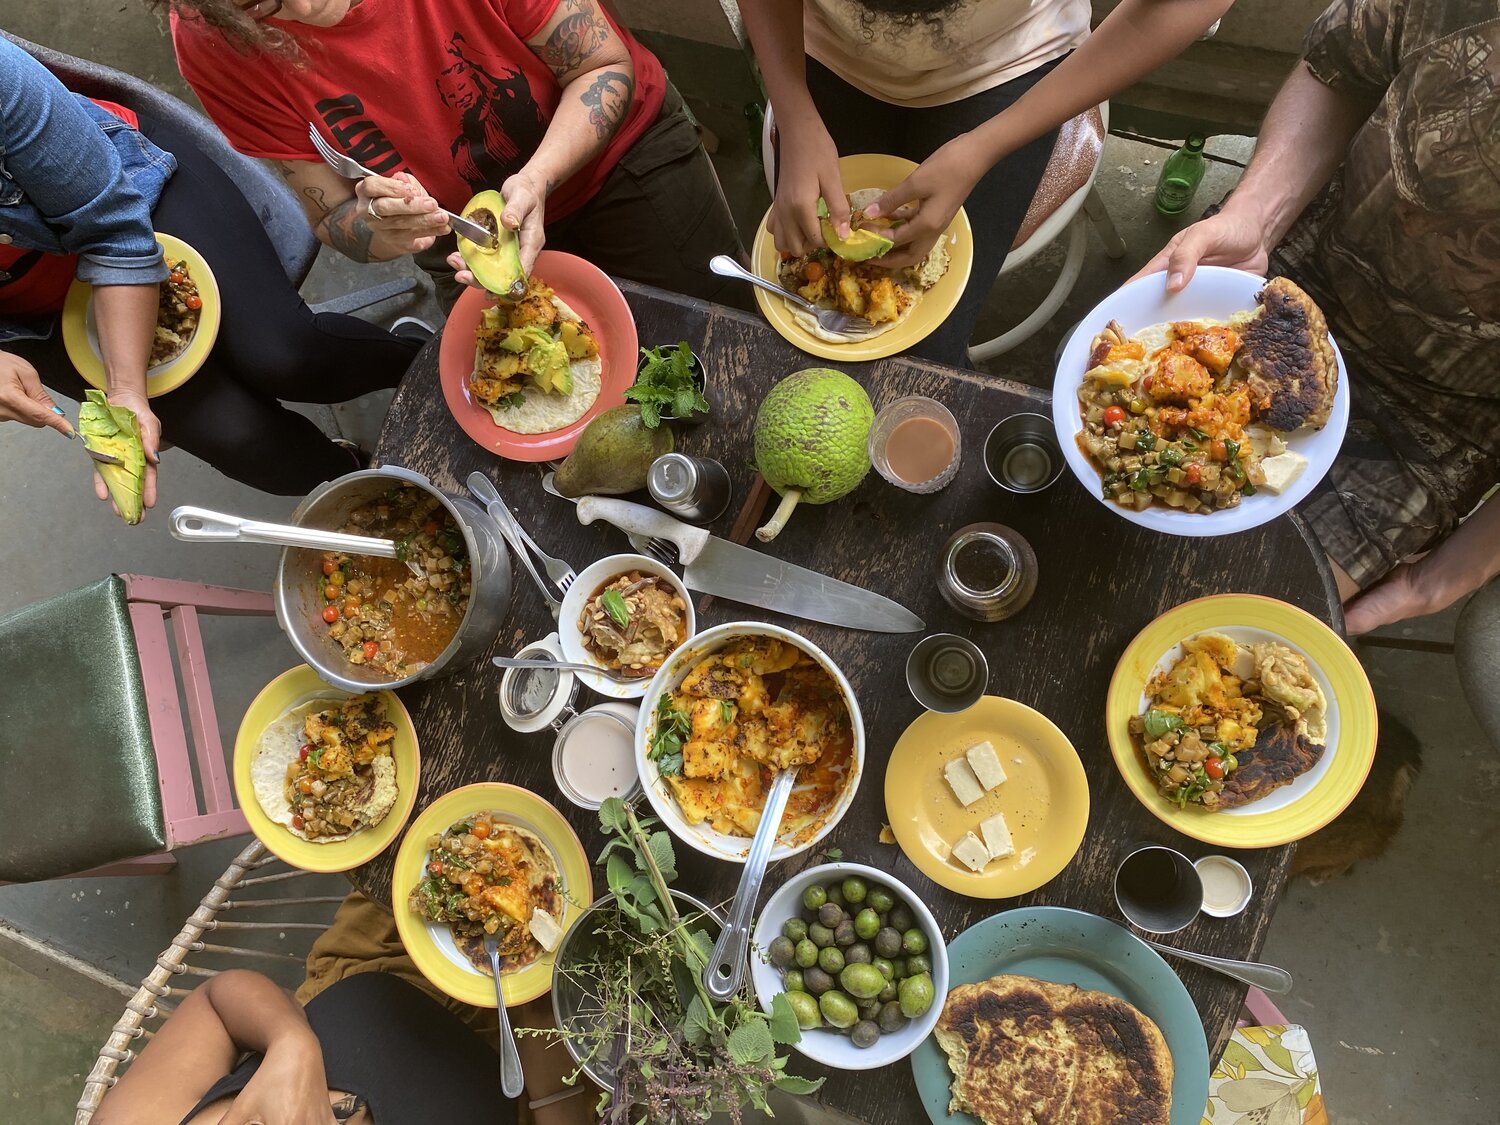 Imagen desde arriba mostrando platos variados con comida y manos cortando aguacates.